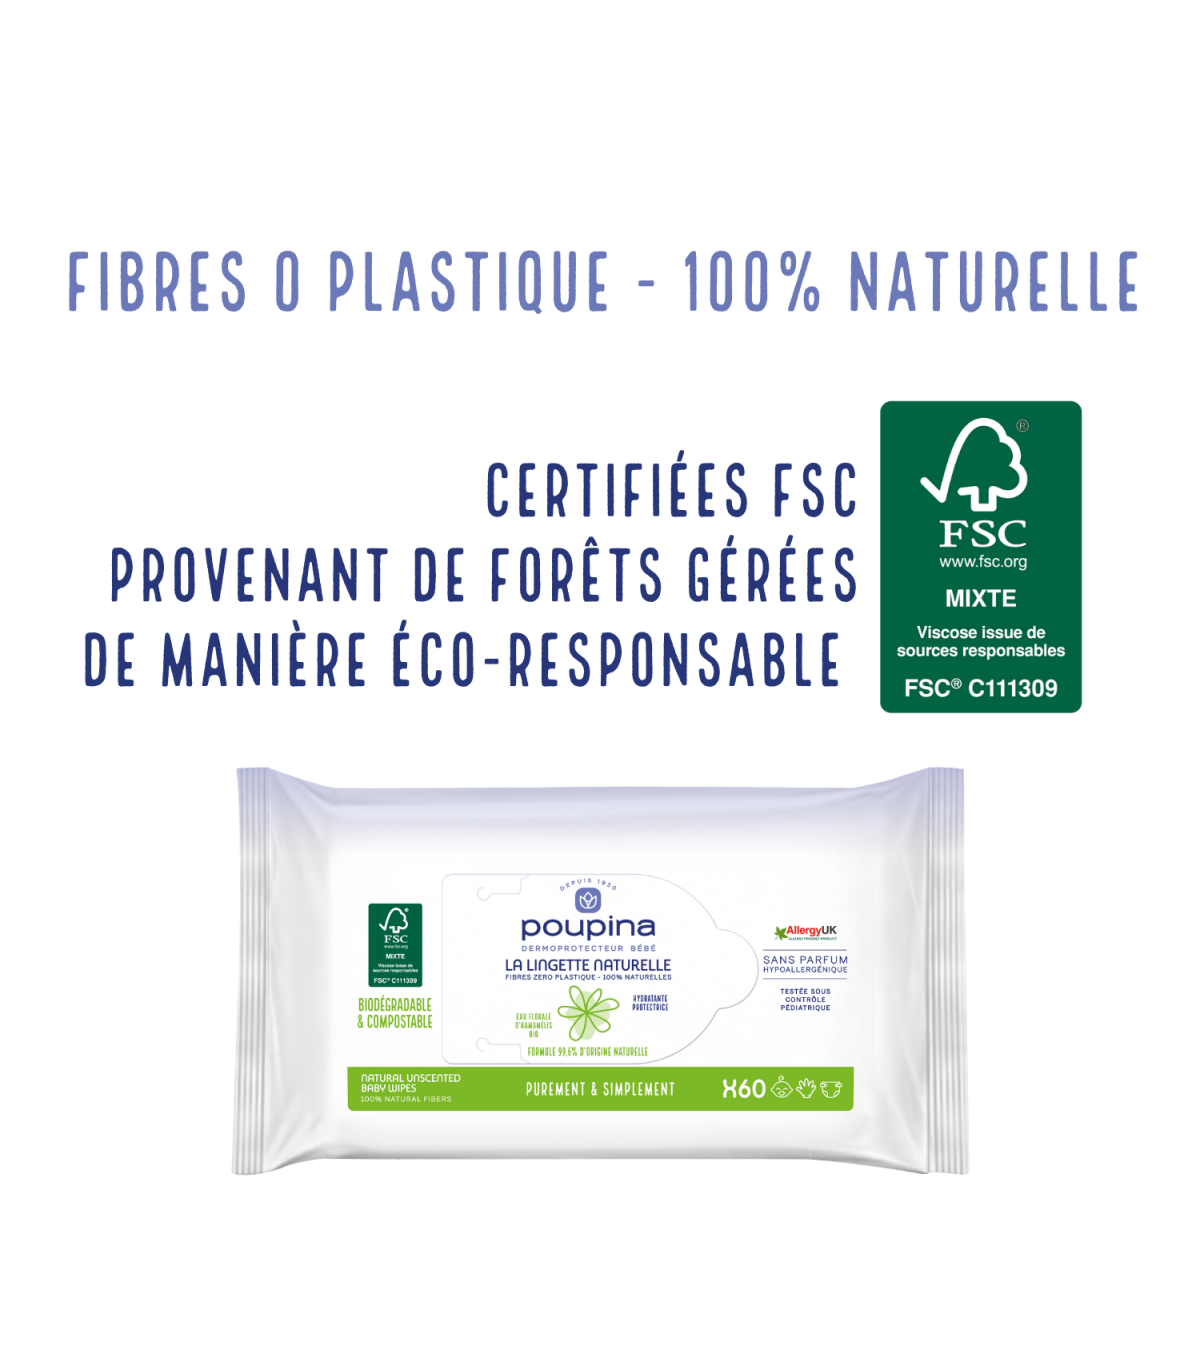 Lingette naturelle - fibres 0 plastique - Sans parfum - Poupina